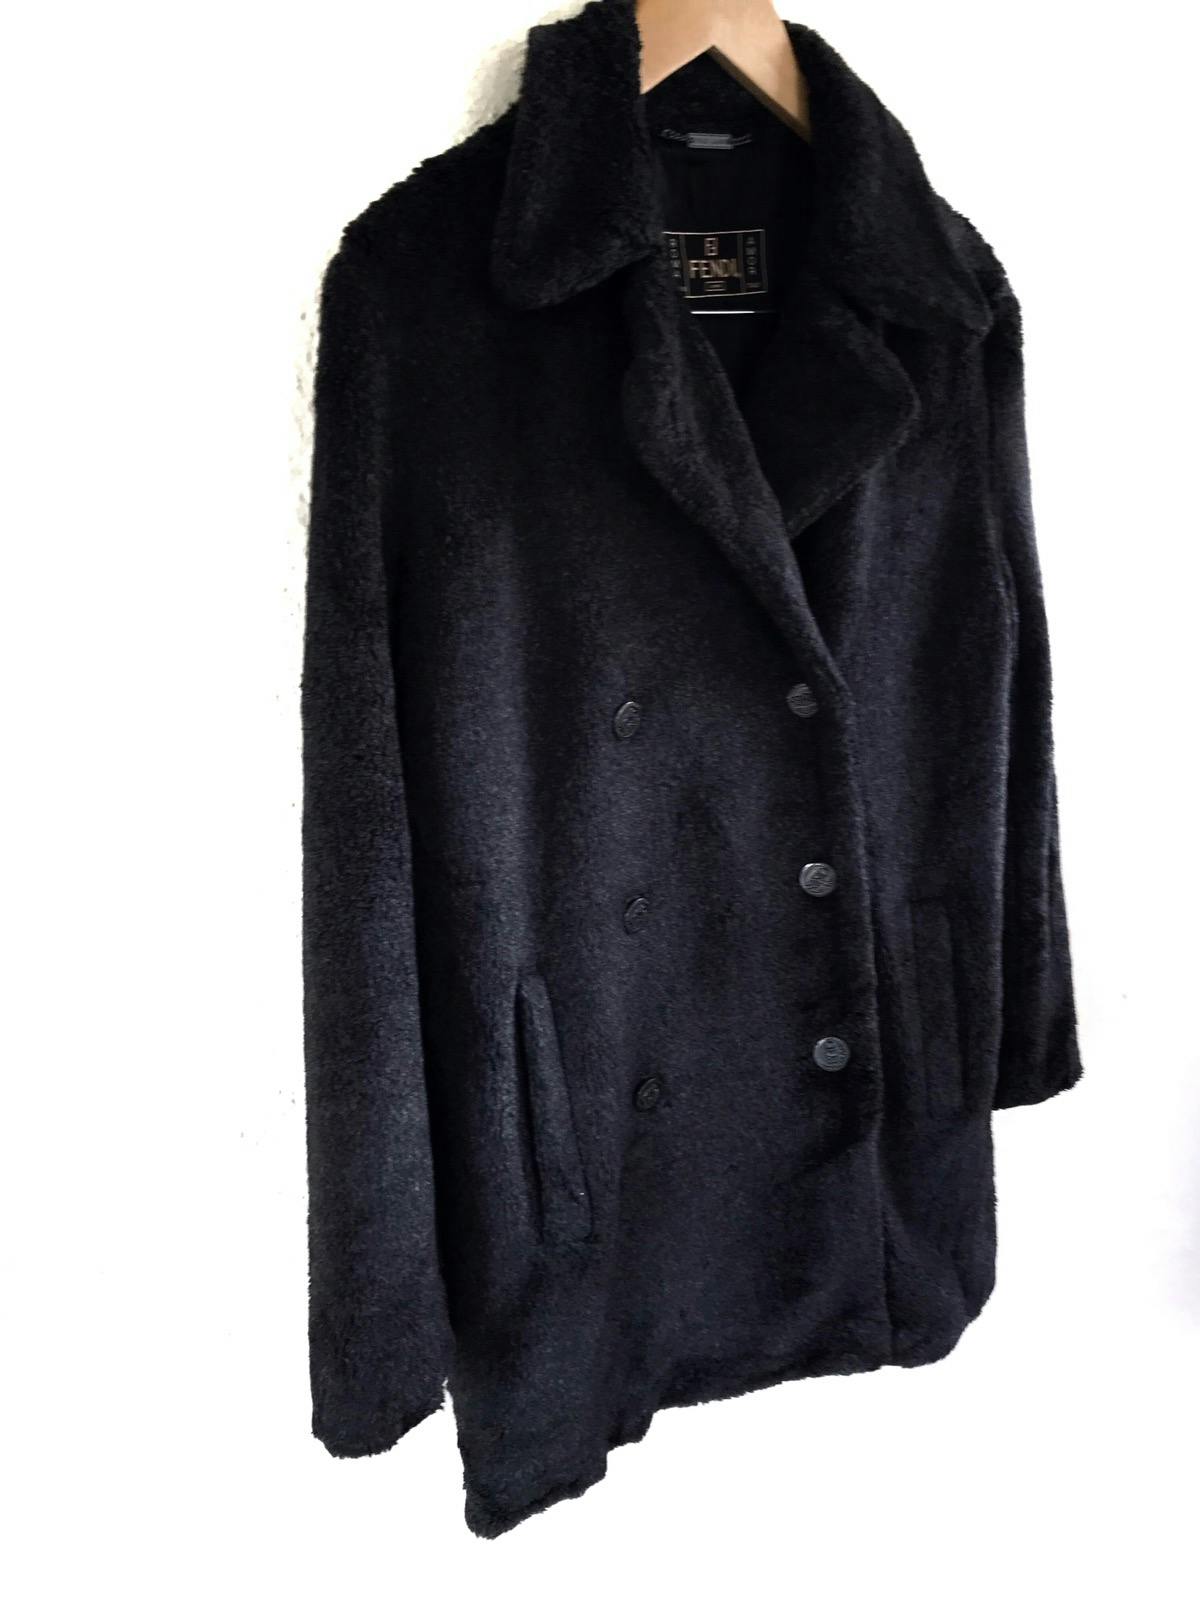 FENDI Jeans Boa Coat/ Fur Jacket Made in Italy - 3